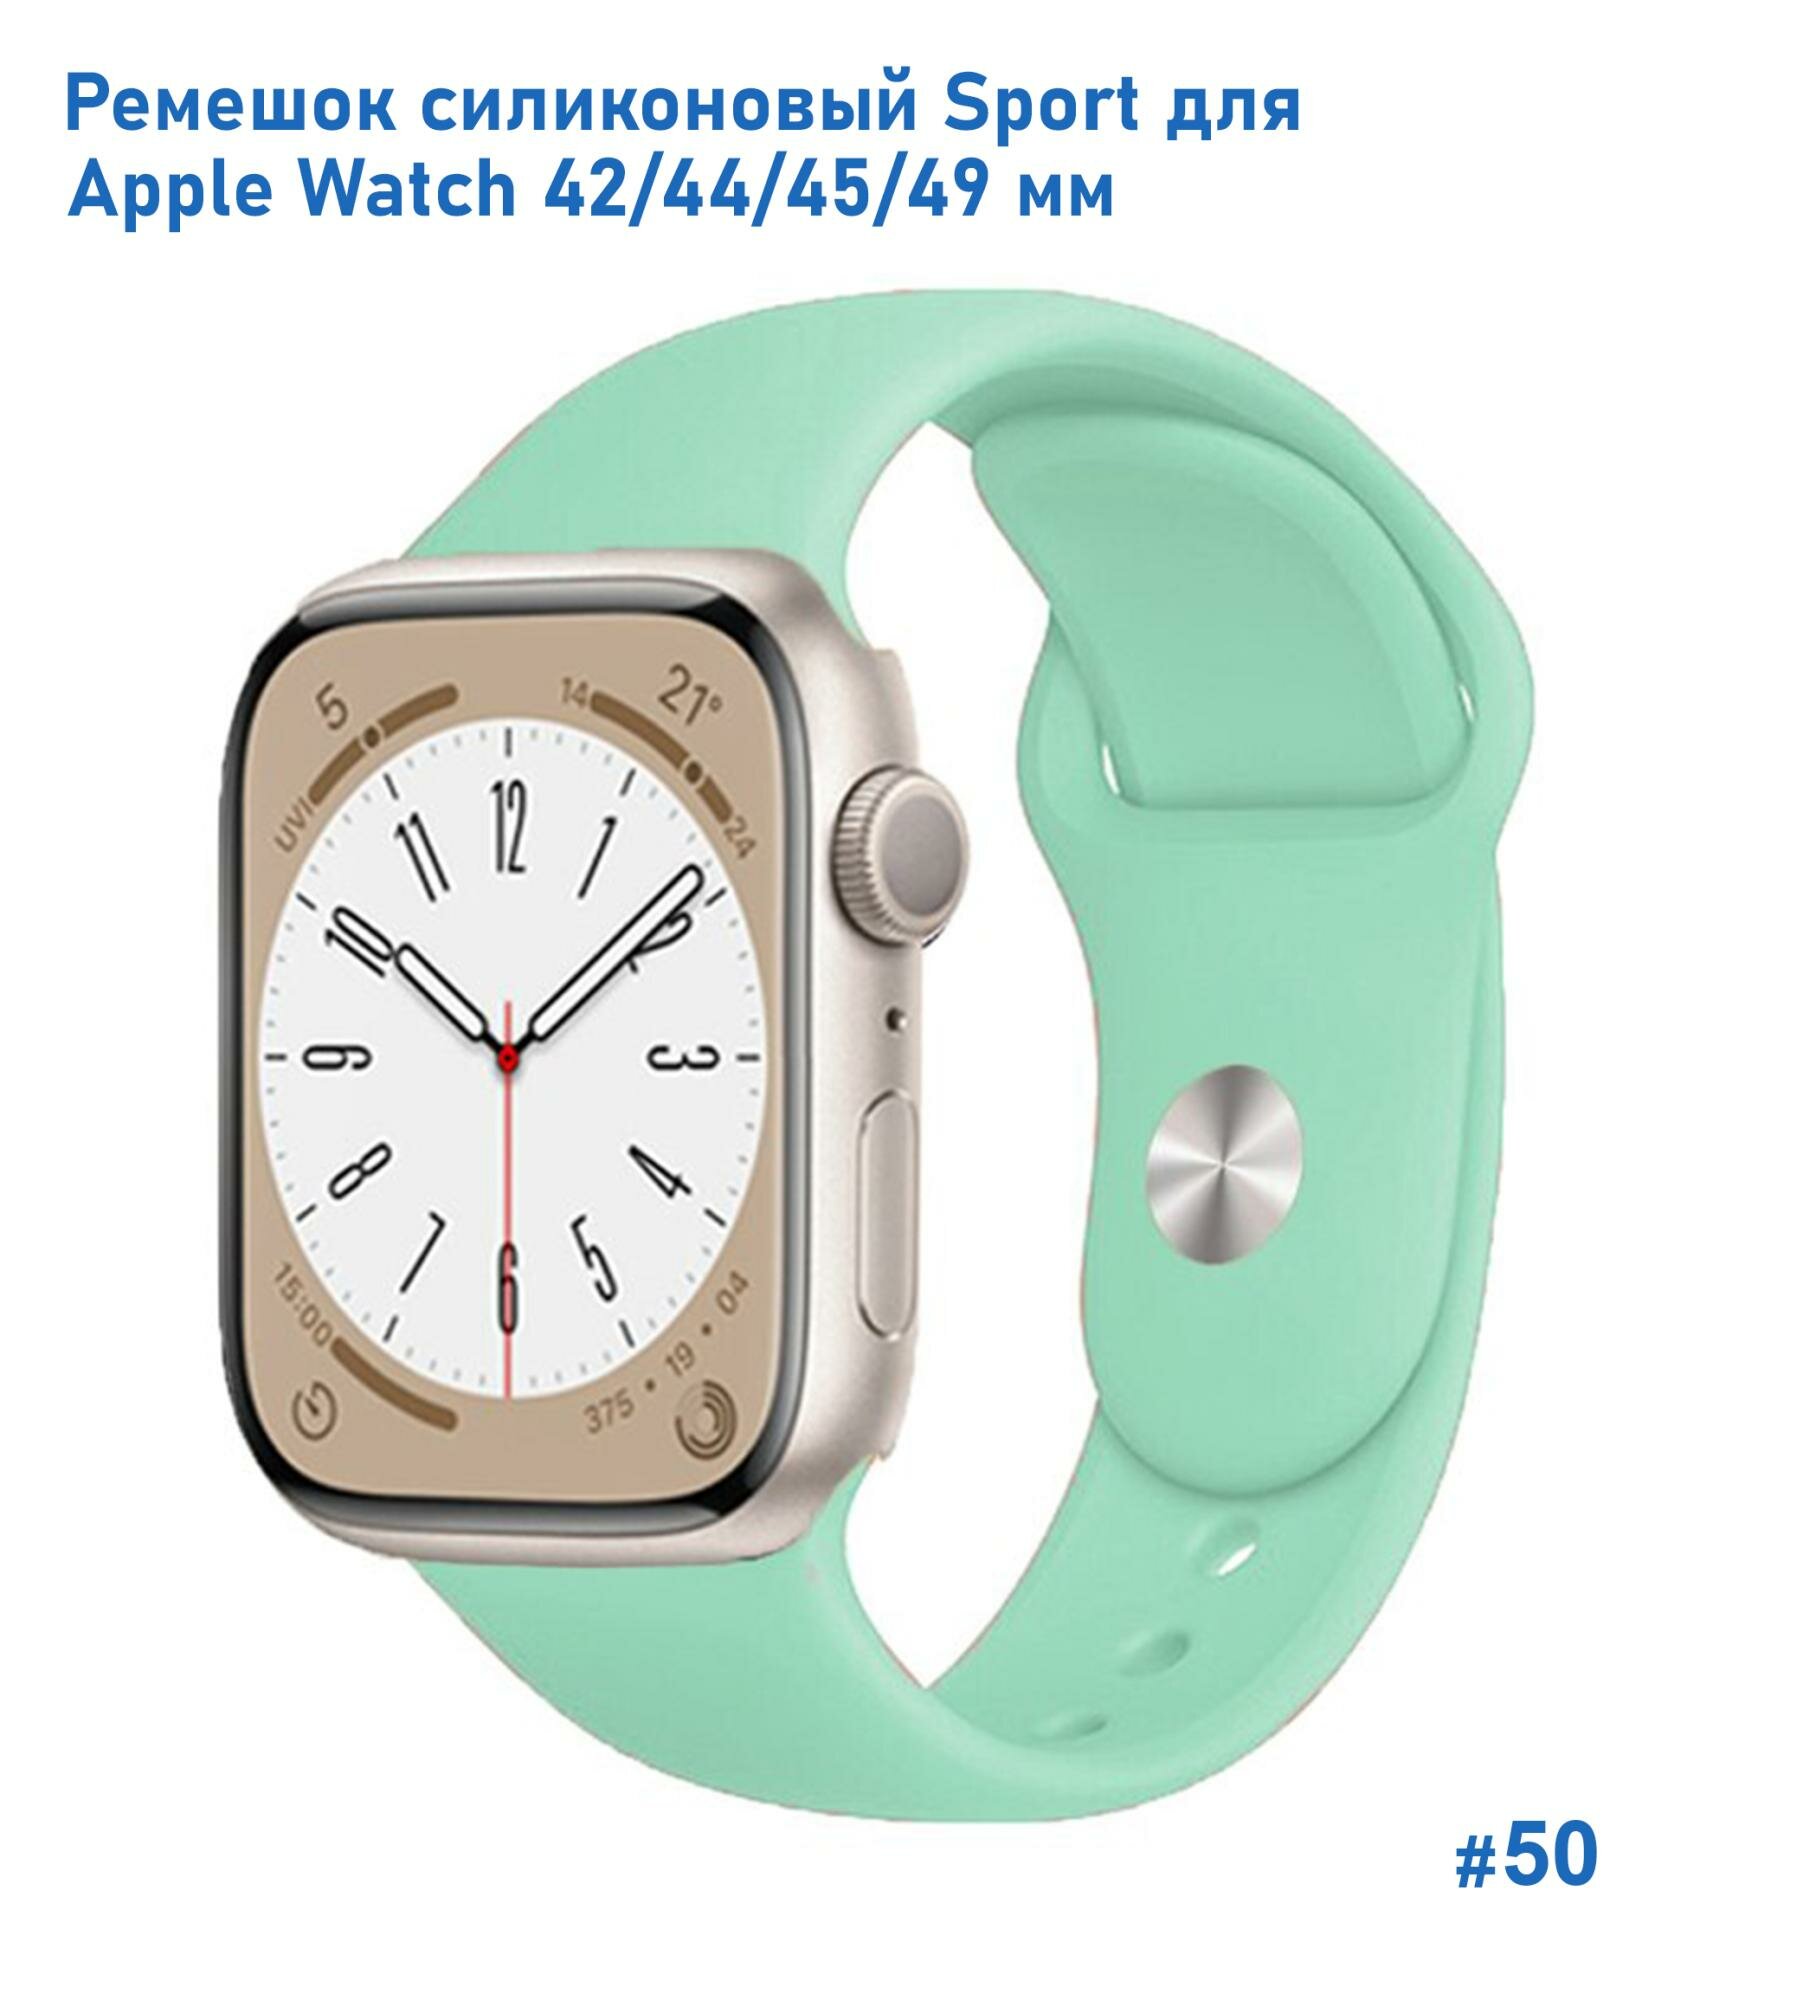 Ремешок силиконовый Sport для Apple Watch 42/44/45/49 мм, на кнопке, ярко-мятный (50)